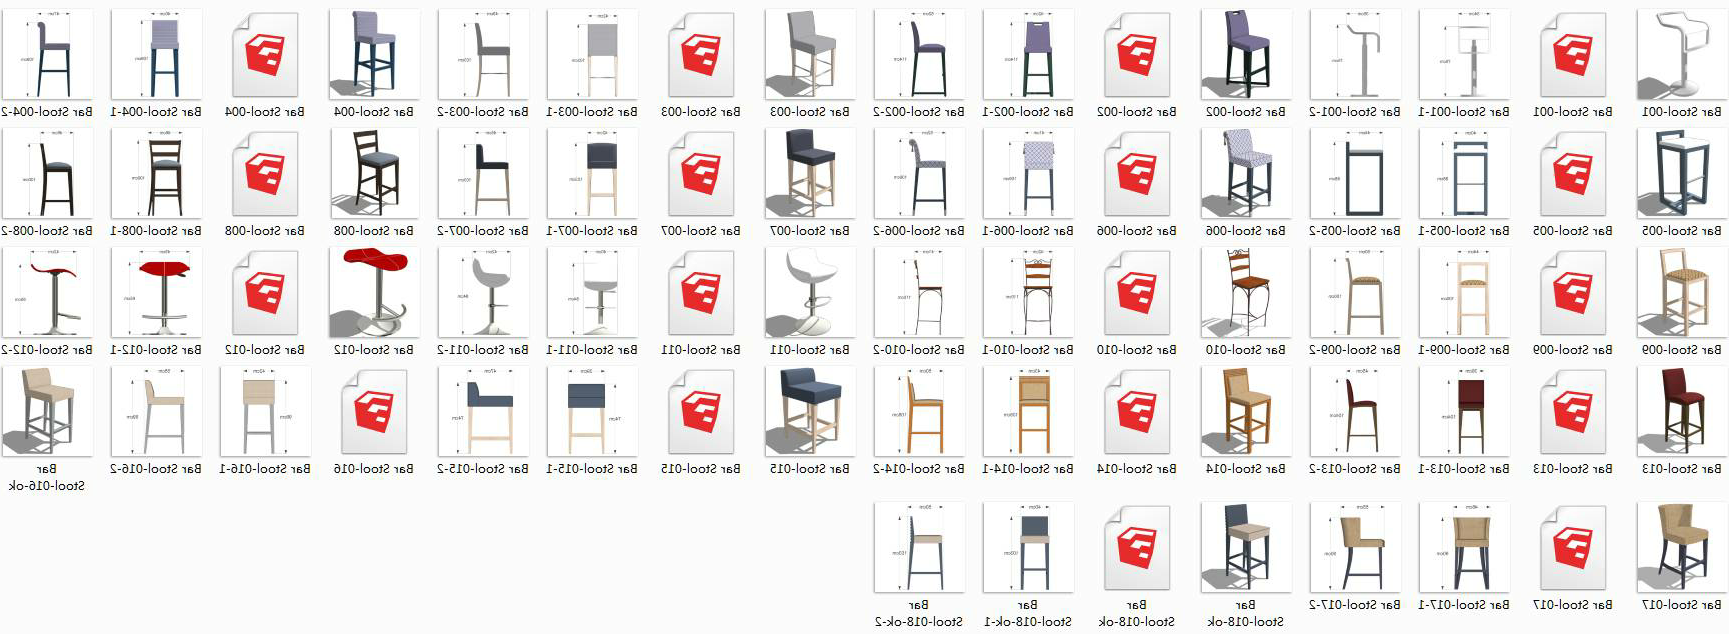 吧台椅合集2 sketchup室内模型下载 第1张